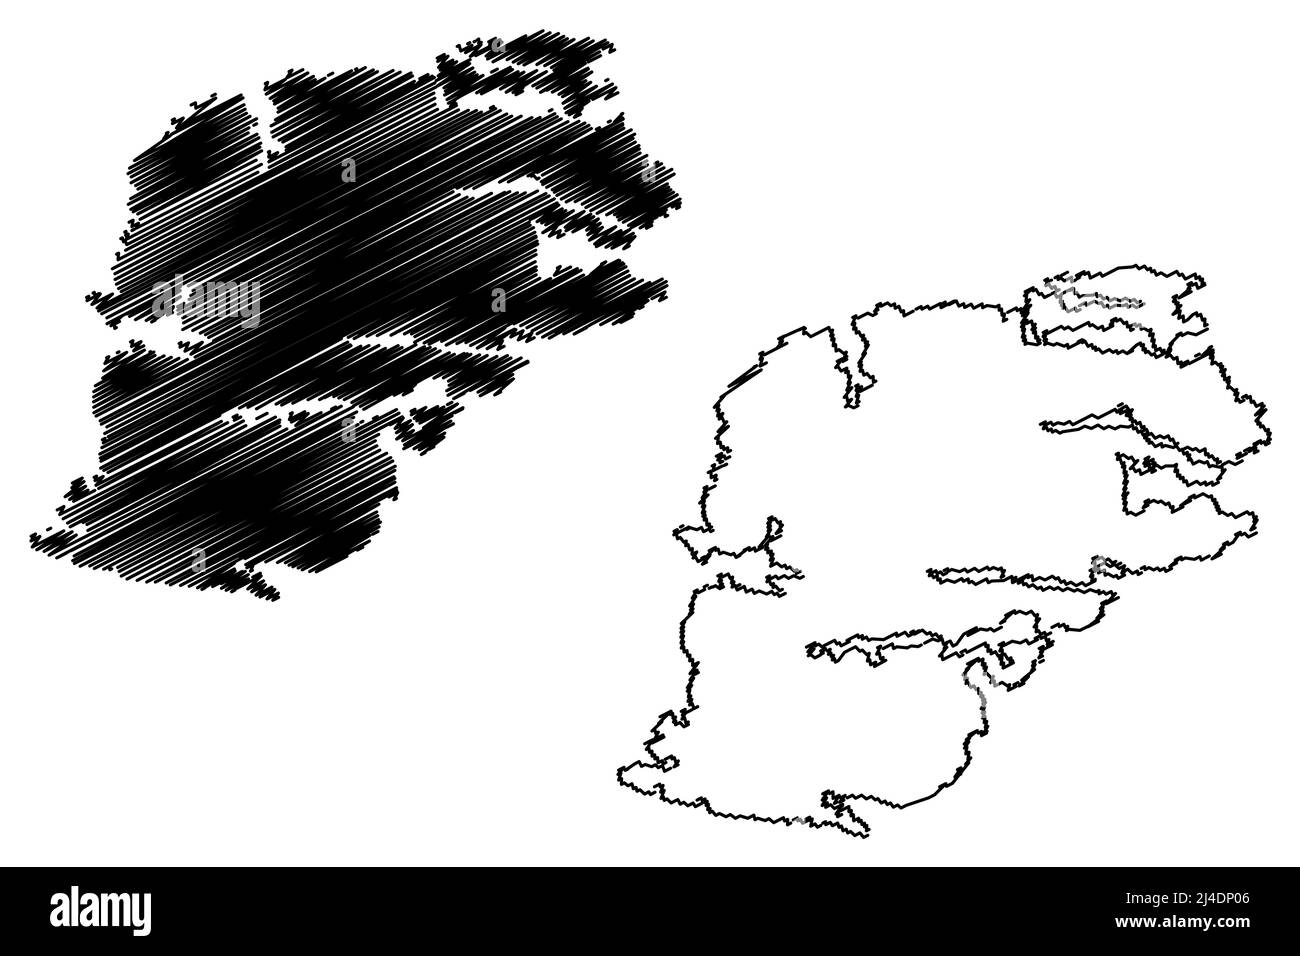 Storlandet island (Republic of Finland) map vector illustration, scribble sketch Storlandet map Stock Vector